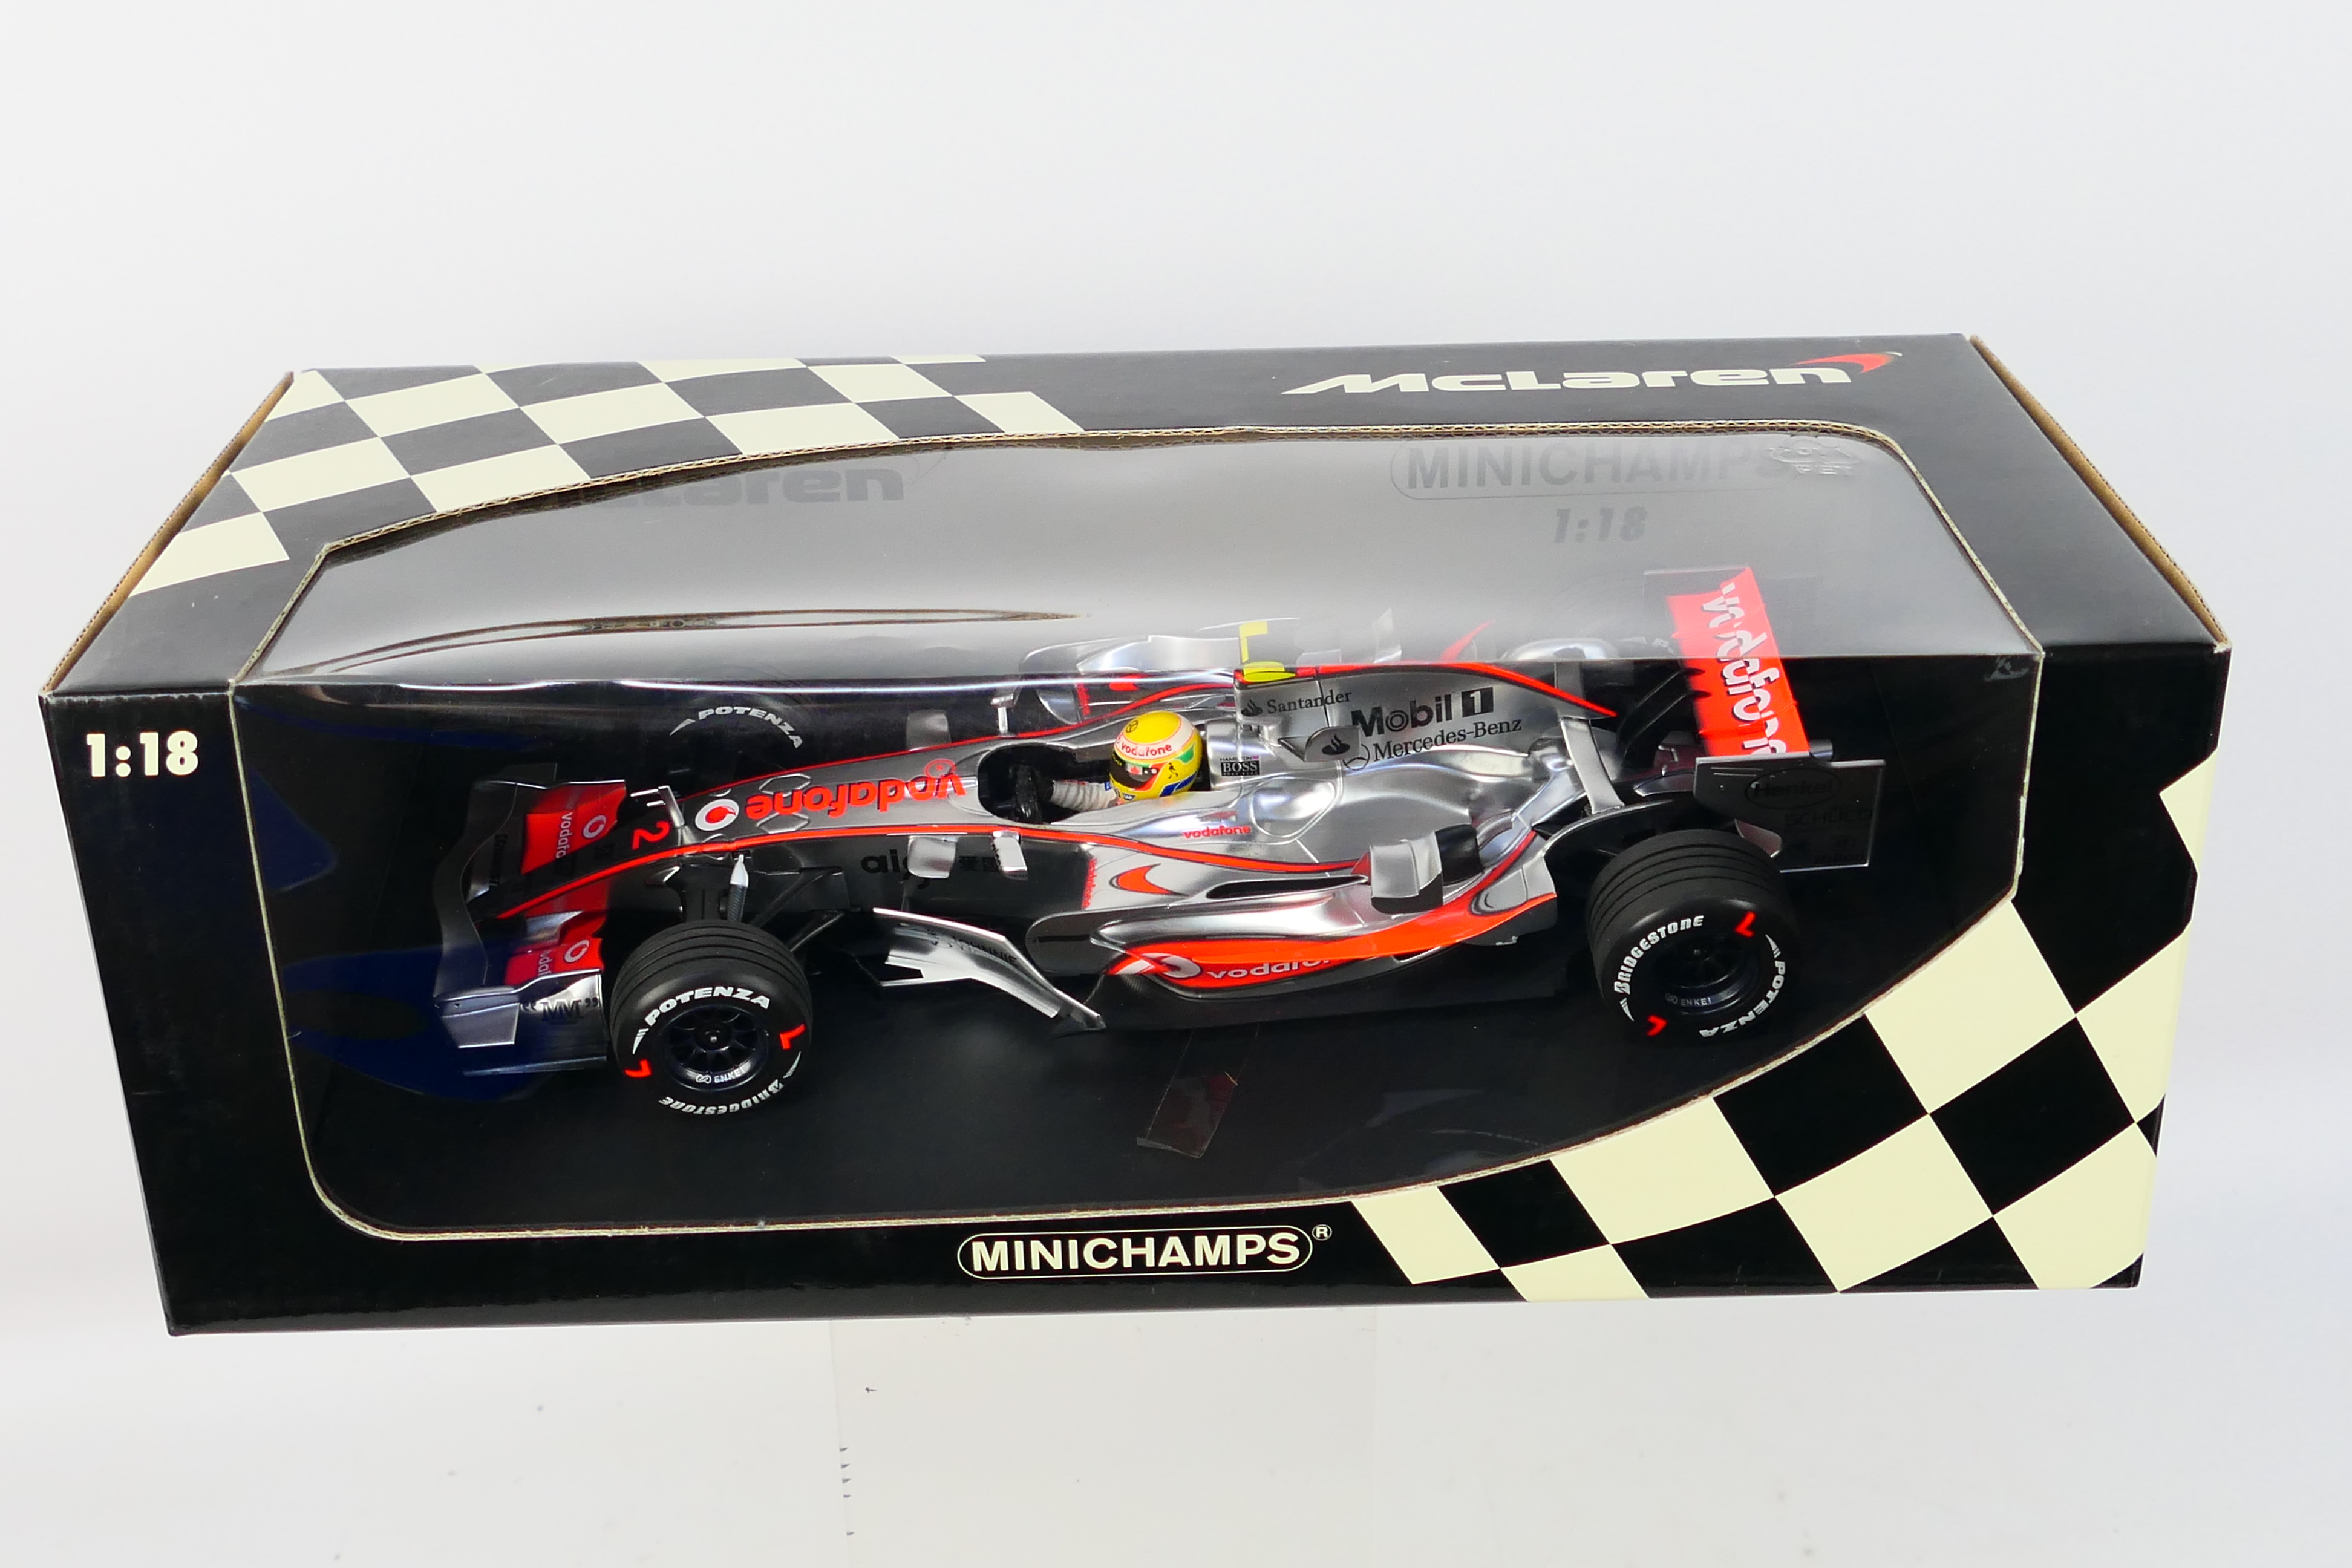 Minichamps - A boxed limited edition 1:18 scale McLaren Mercedes MP4-22 Lewis Hamilton 1st win - Bild 3 aus 3